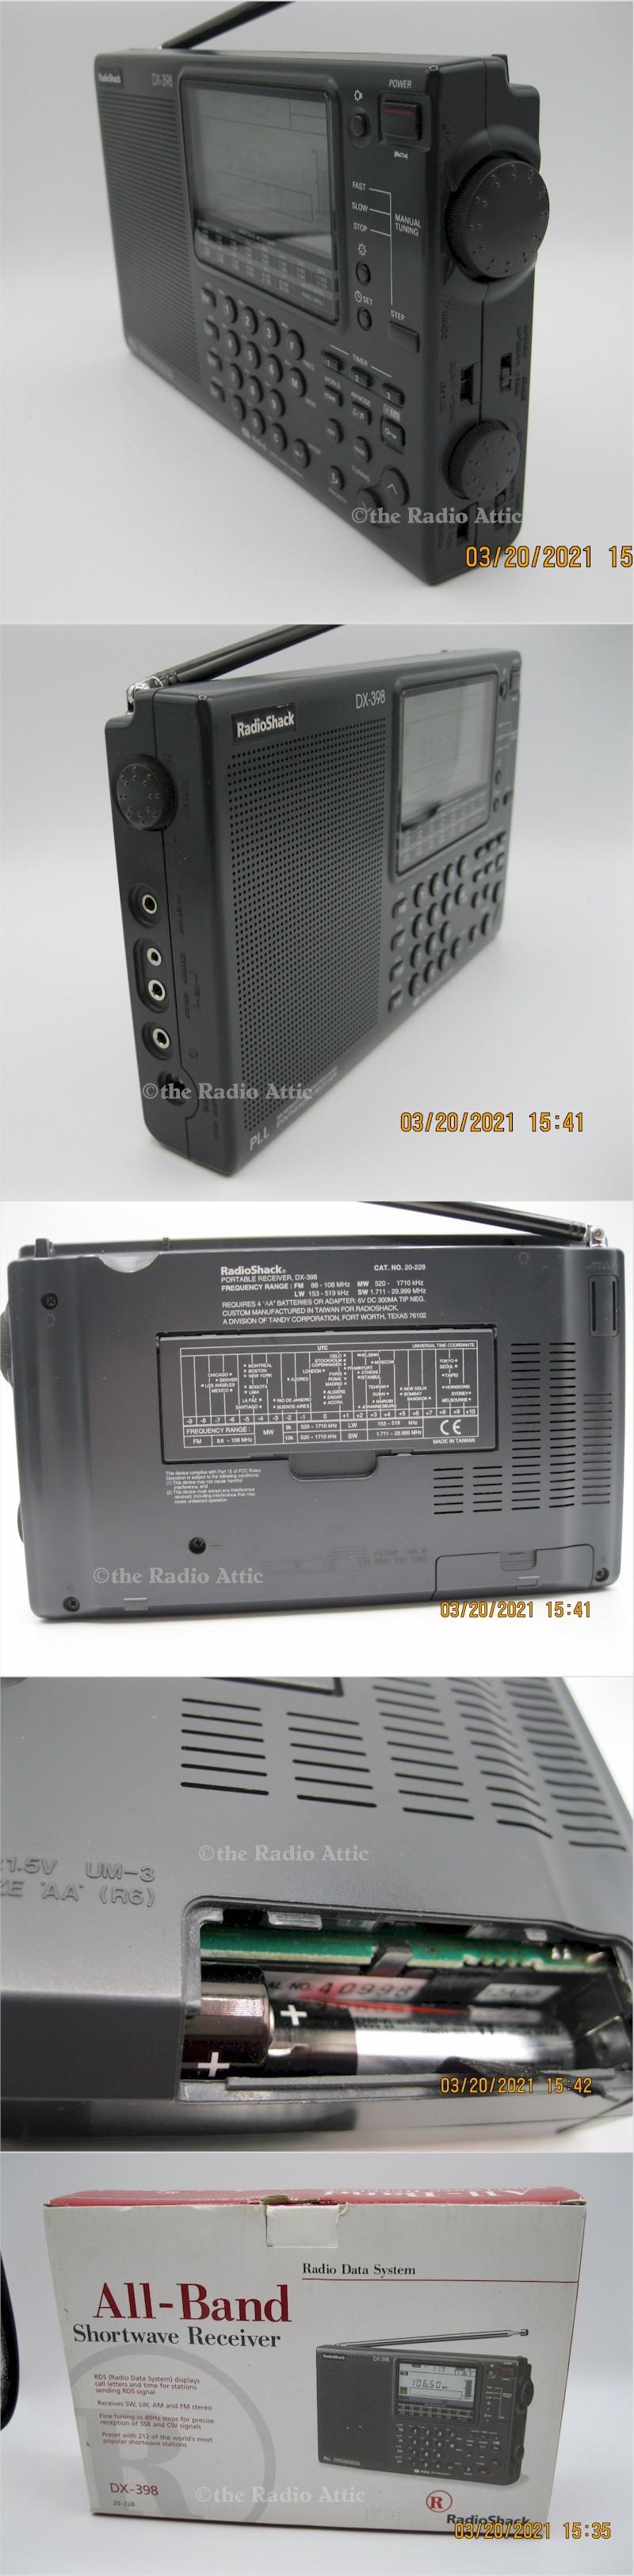 Radio Shack DX-398 Portable Shortwave Receiver (1996)